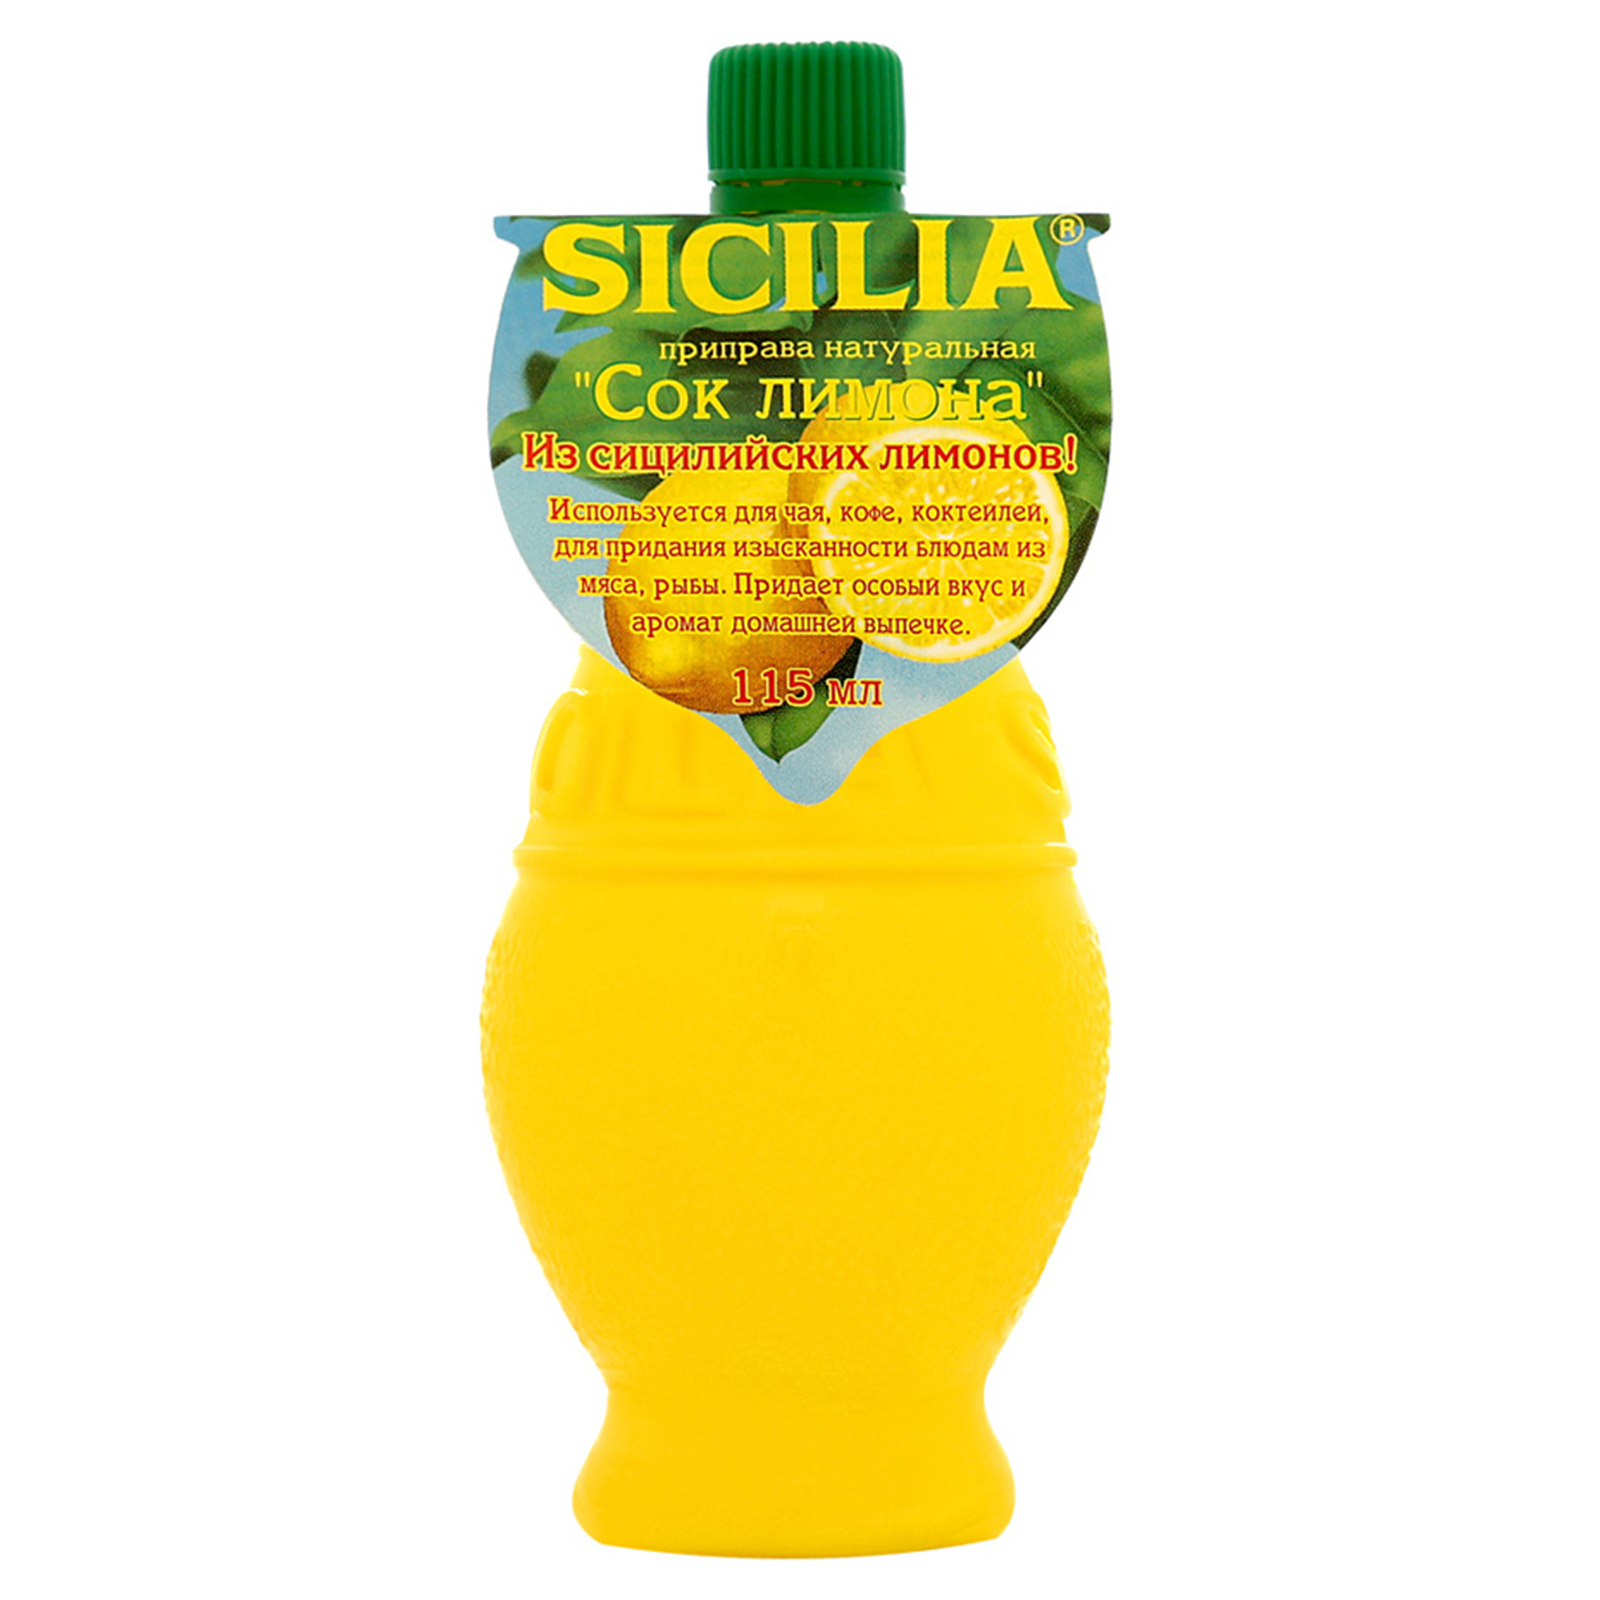 Концентрат лимона. Сок лимона Sicilia, 115 мл. Sicilia приправа натуральная сок лимона 115 г.